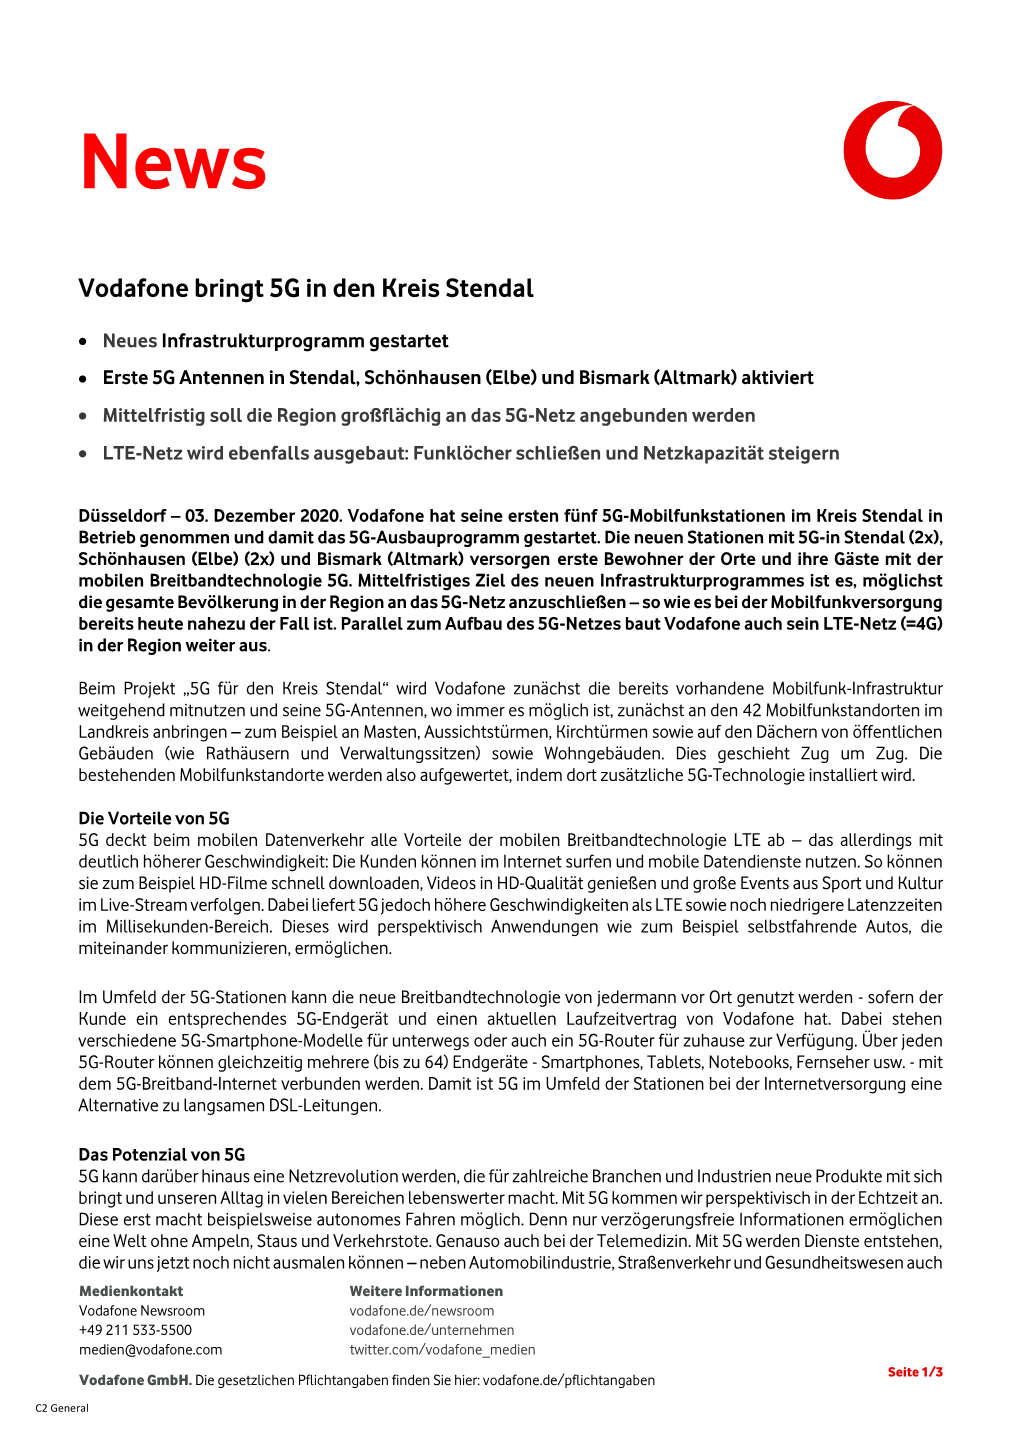 Vodafone Bringt 5G in Den Kreis Stendal